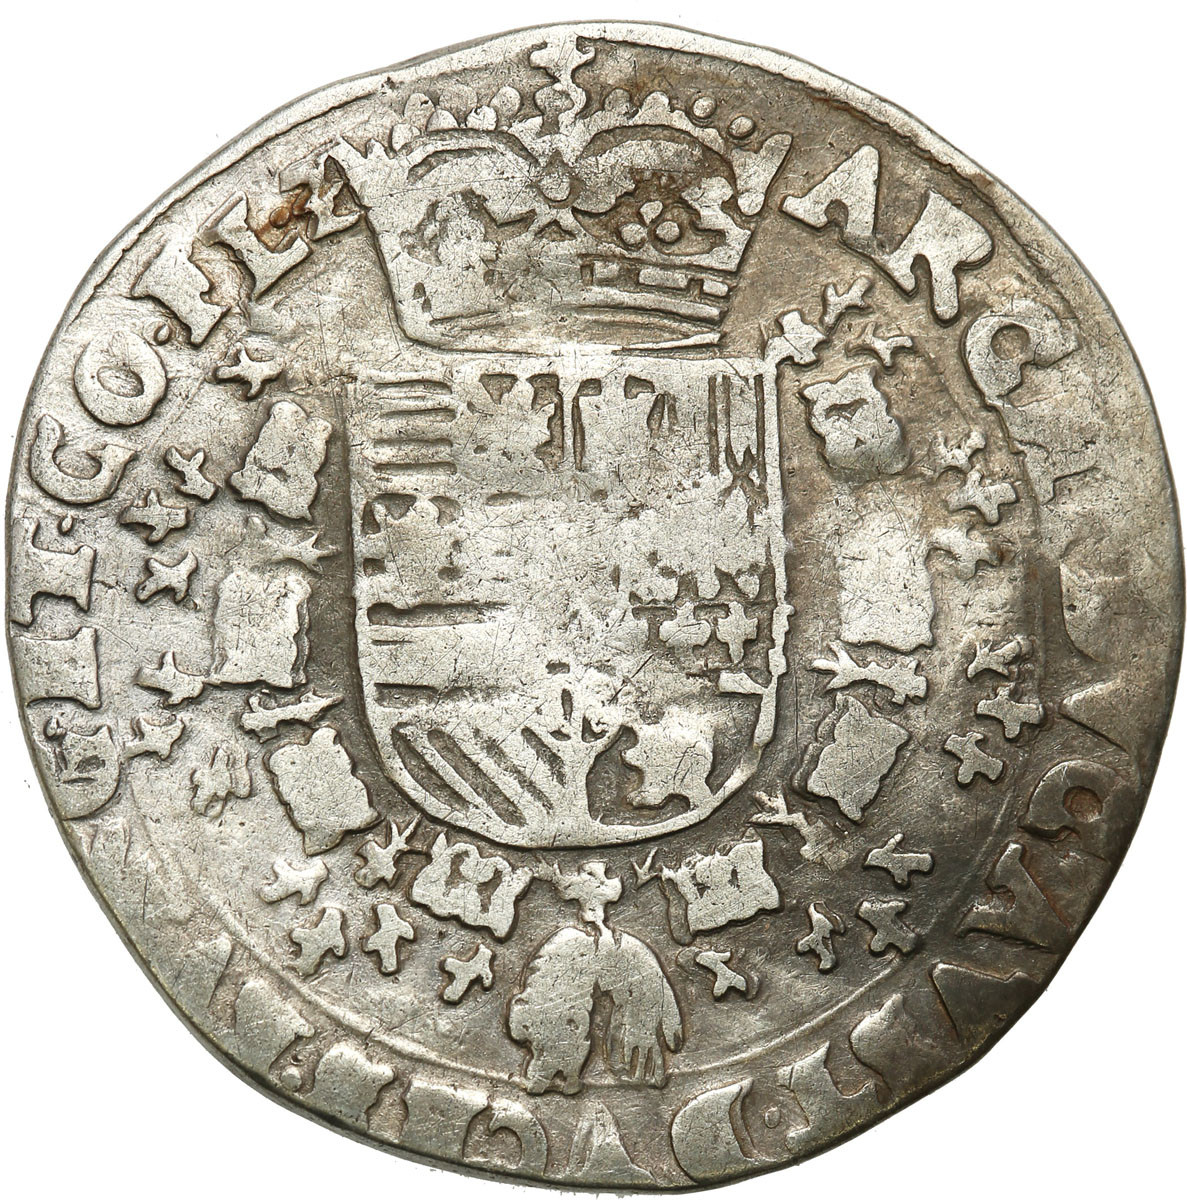 Niderlandy hiszpańskie, Albert i Elżbieta (1598-1621). Flandria, 1/4 patagona bez daty